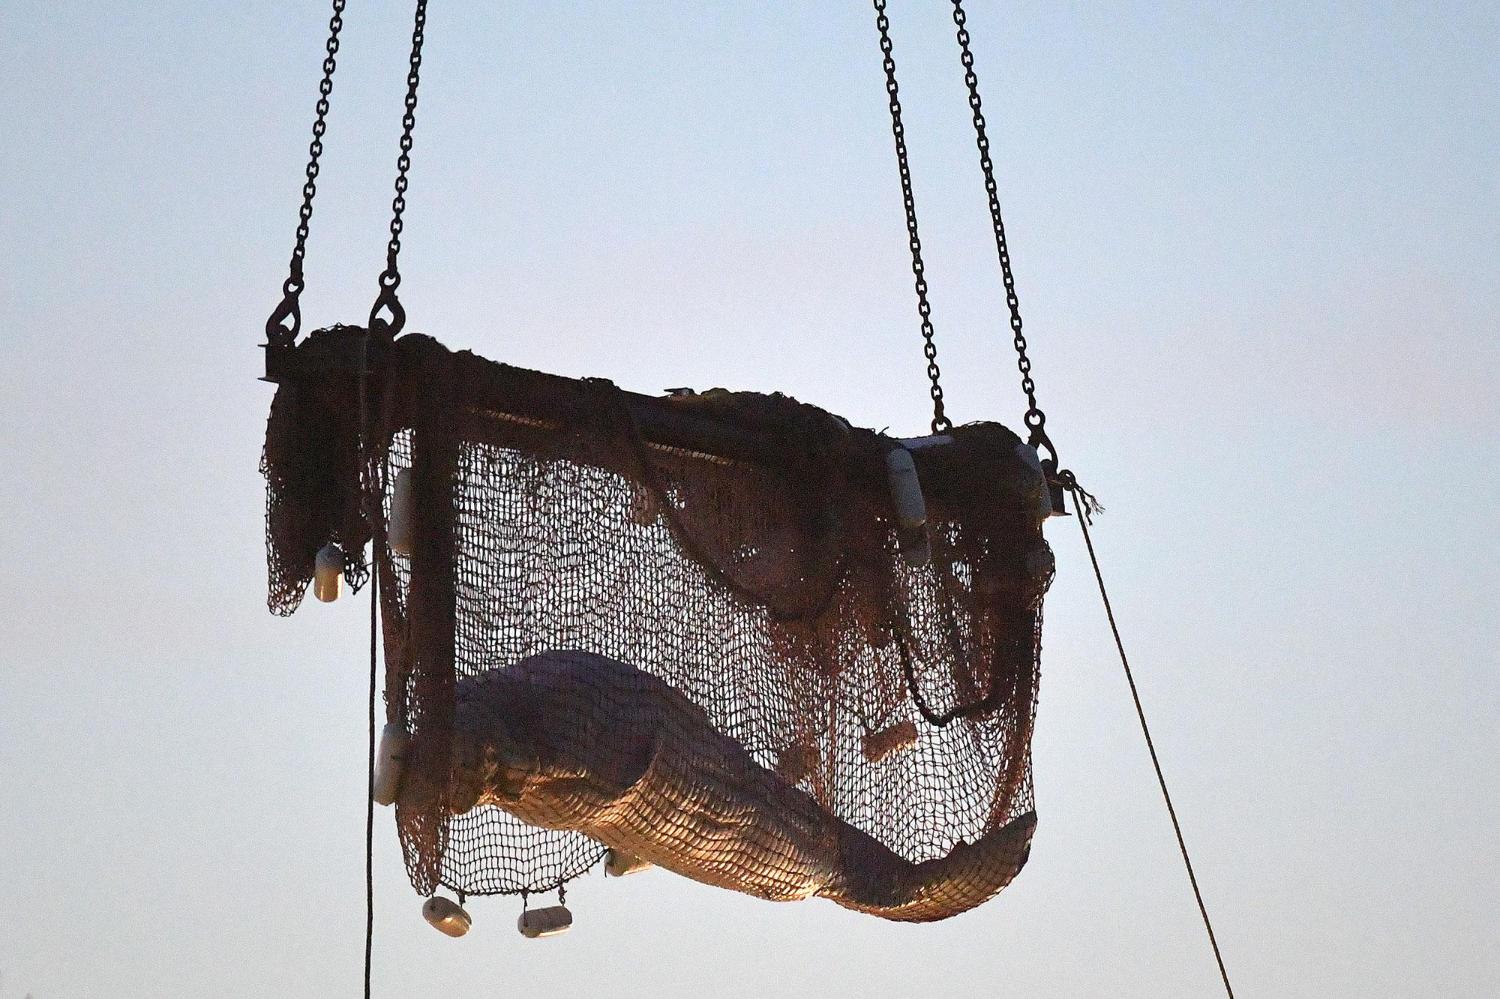 Πέθανε η φάλαινα μπελούγκα που είχε εγκλωβιστεί στον Σηκουάνα